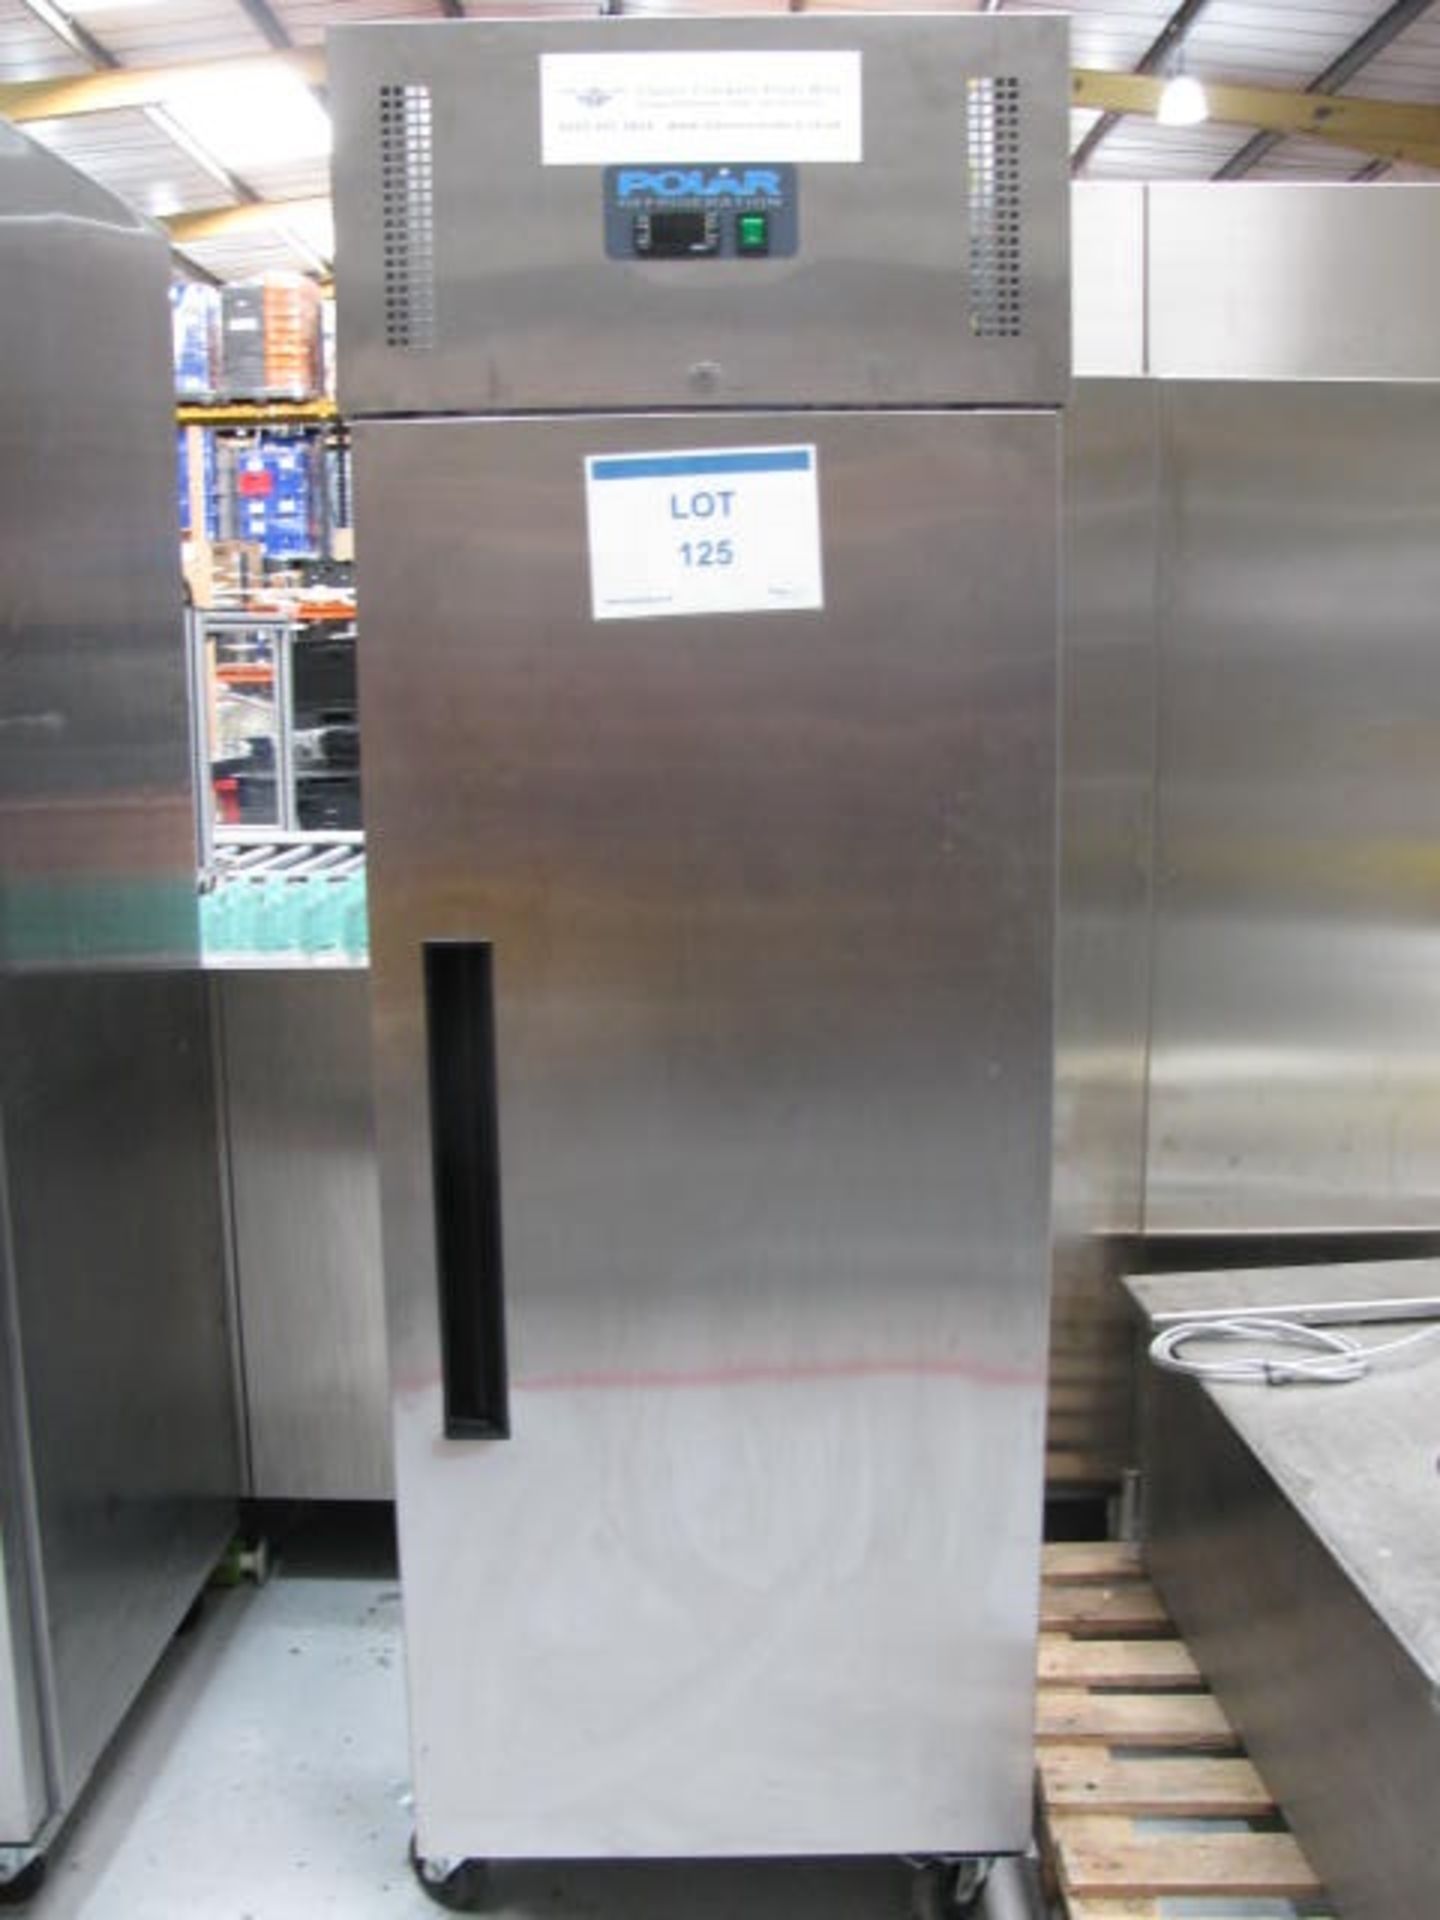 Polar stainless steel upright fridge Model G592